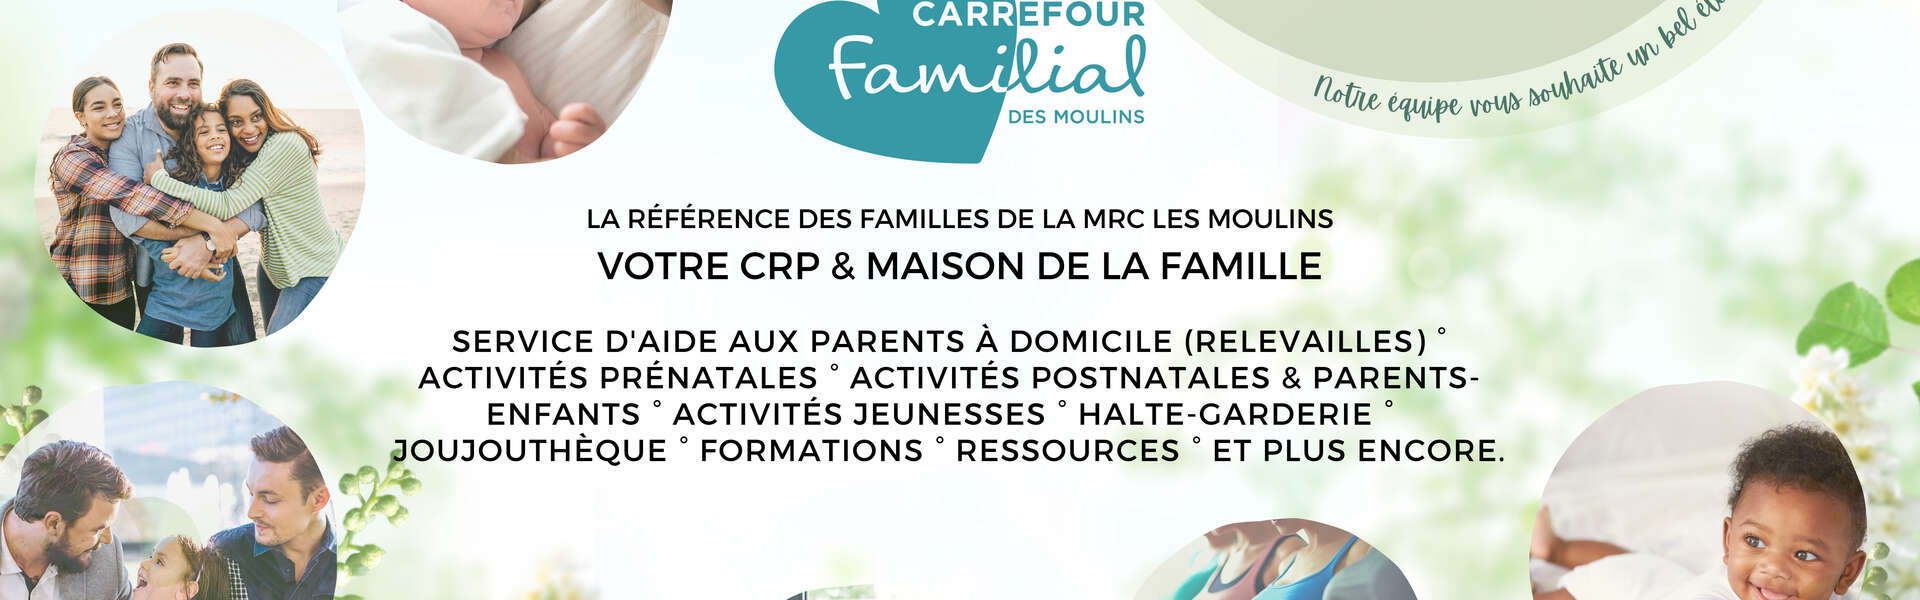 Carrefour Familial Des Moulins - Bandeau hiver 2022 1